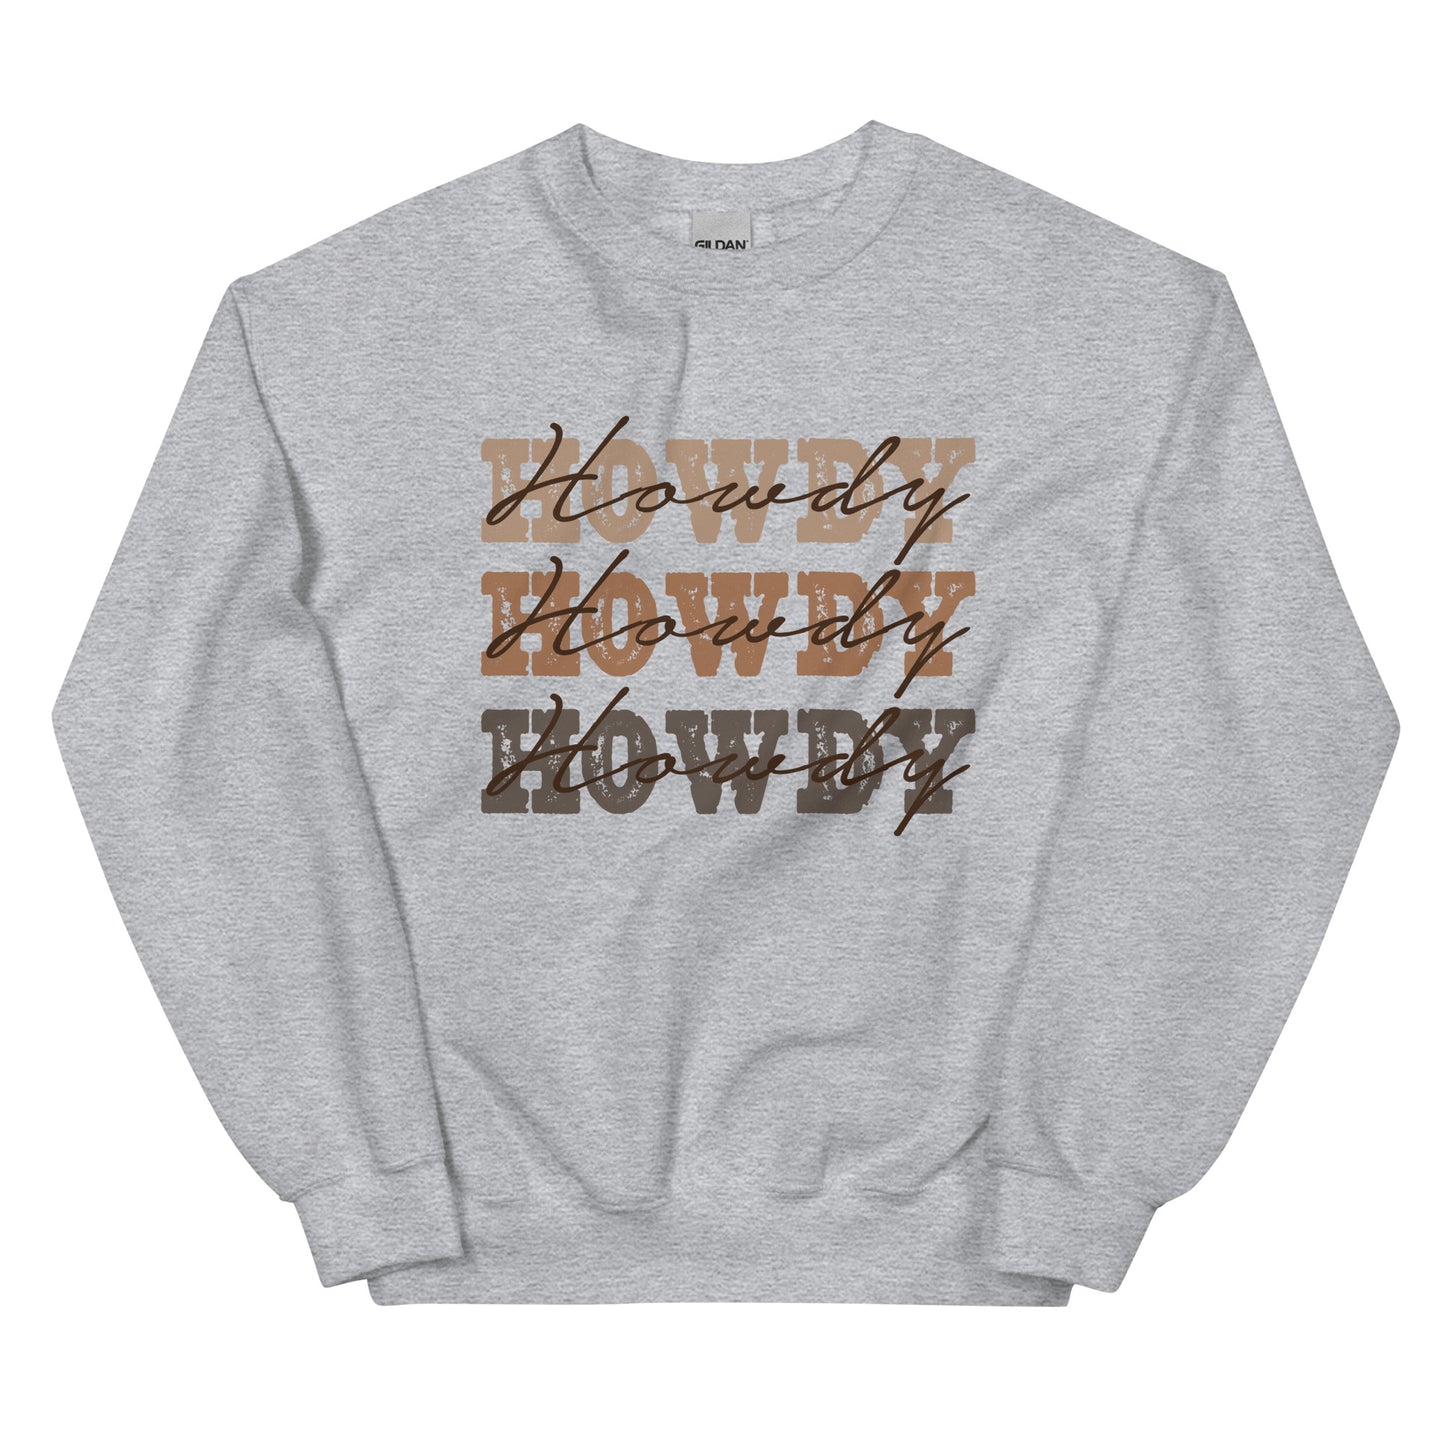 Vintage Howdy Sweatshirt